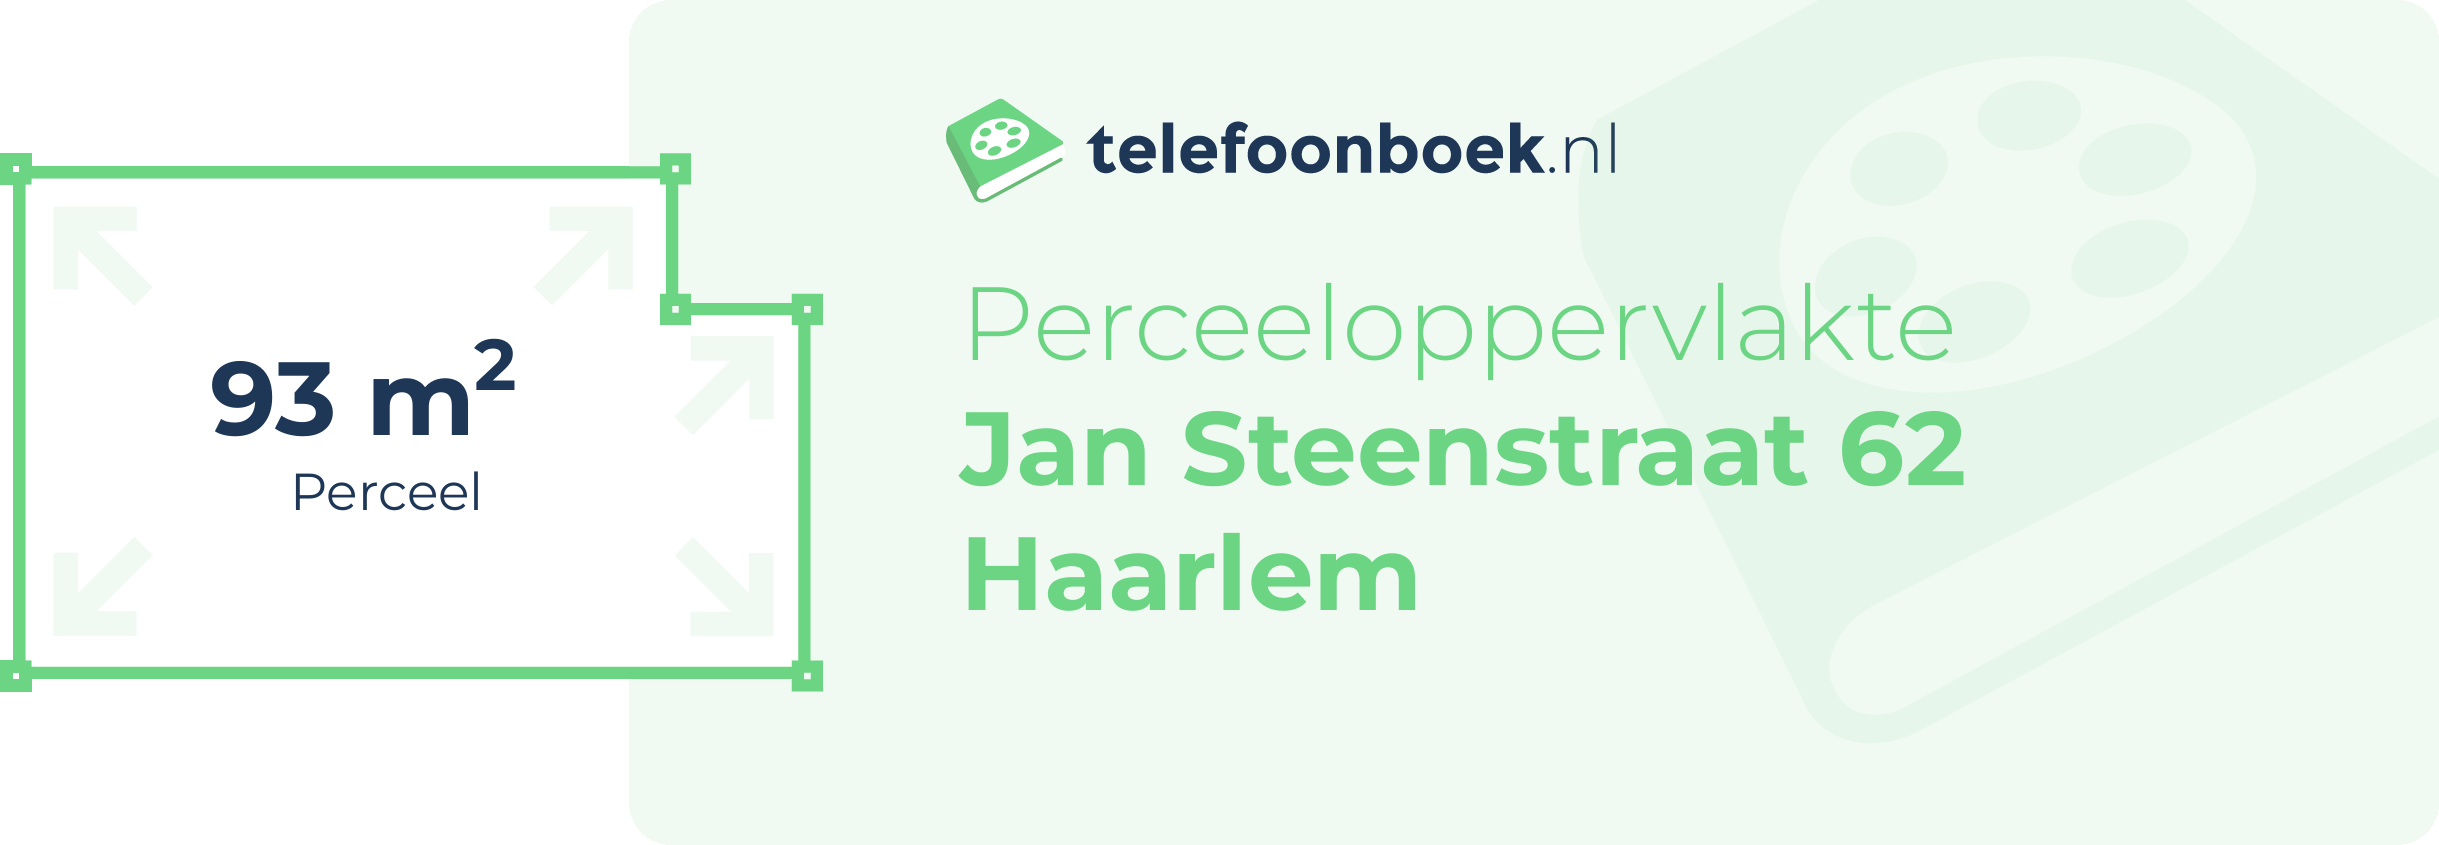 Perceeloppervlakte Jan Steenstraat 62 Haarlem